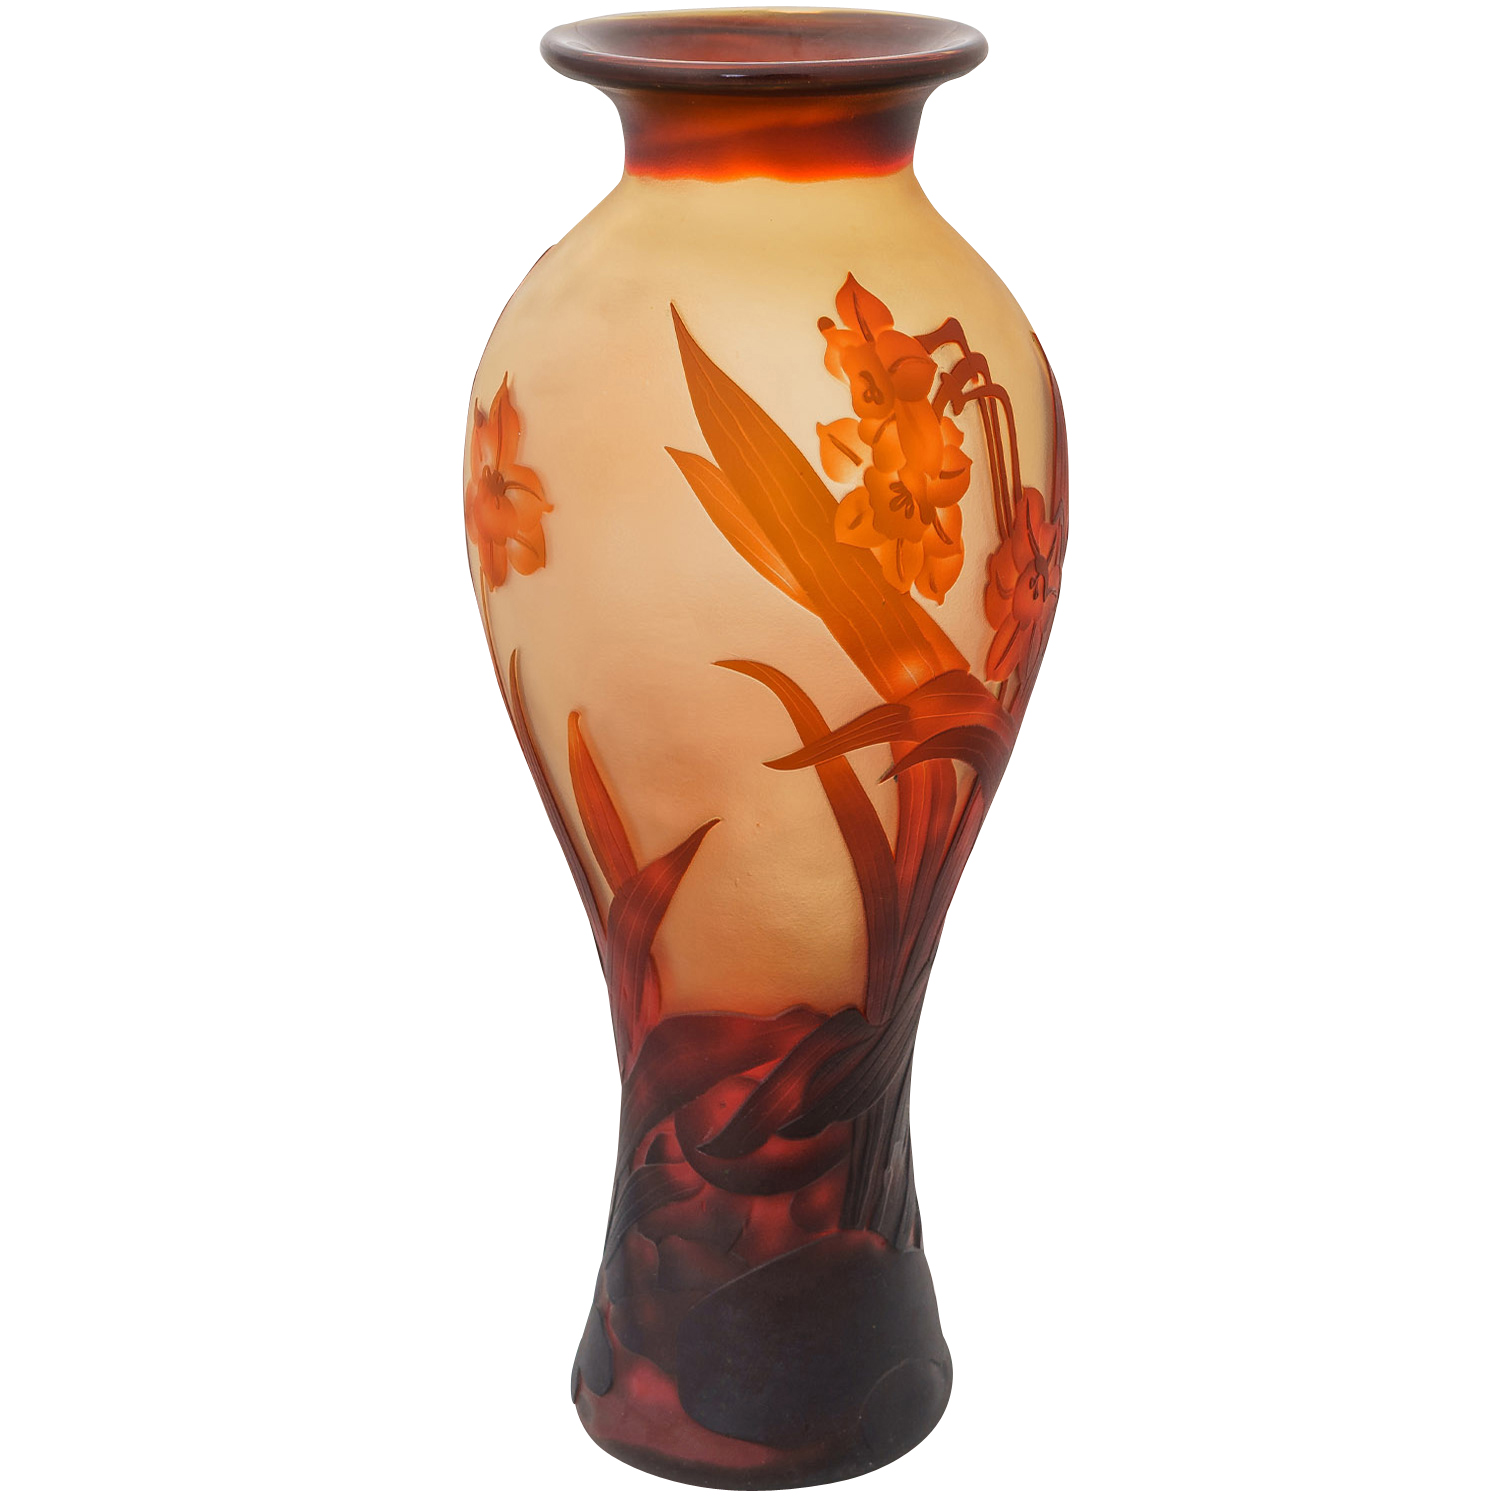 Vase Replika nach Galle Gallé Glasvase Glas Antik-Jugendstil-Stil Kopie c15 